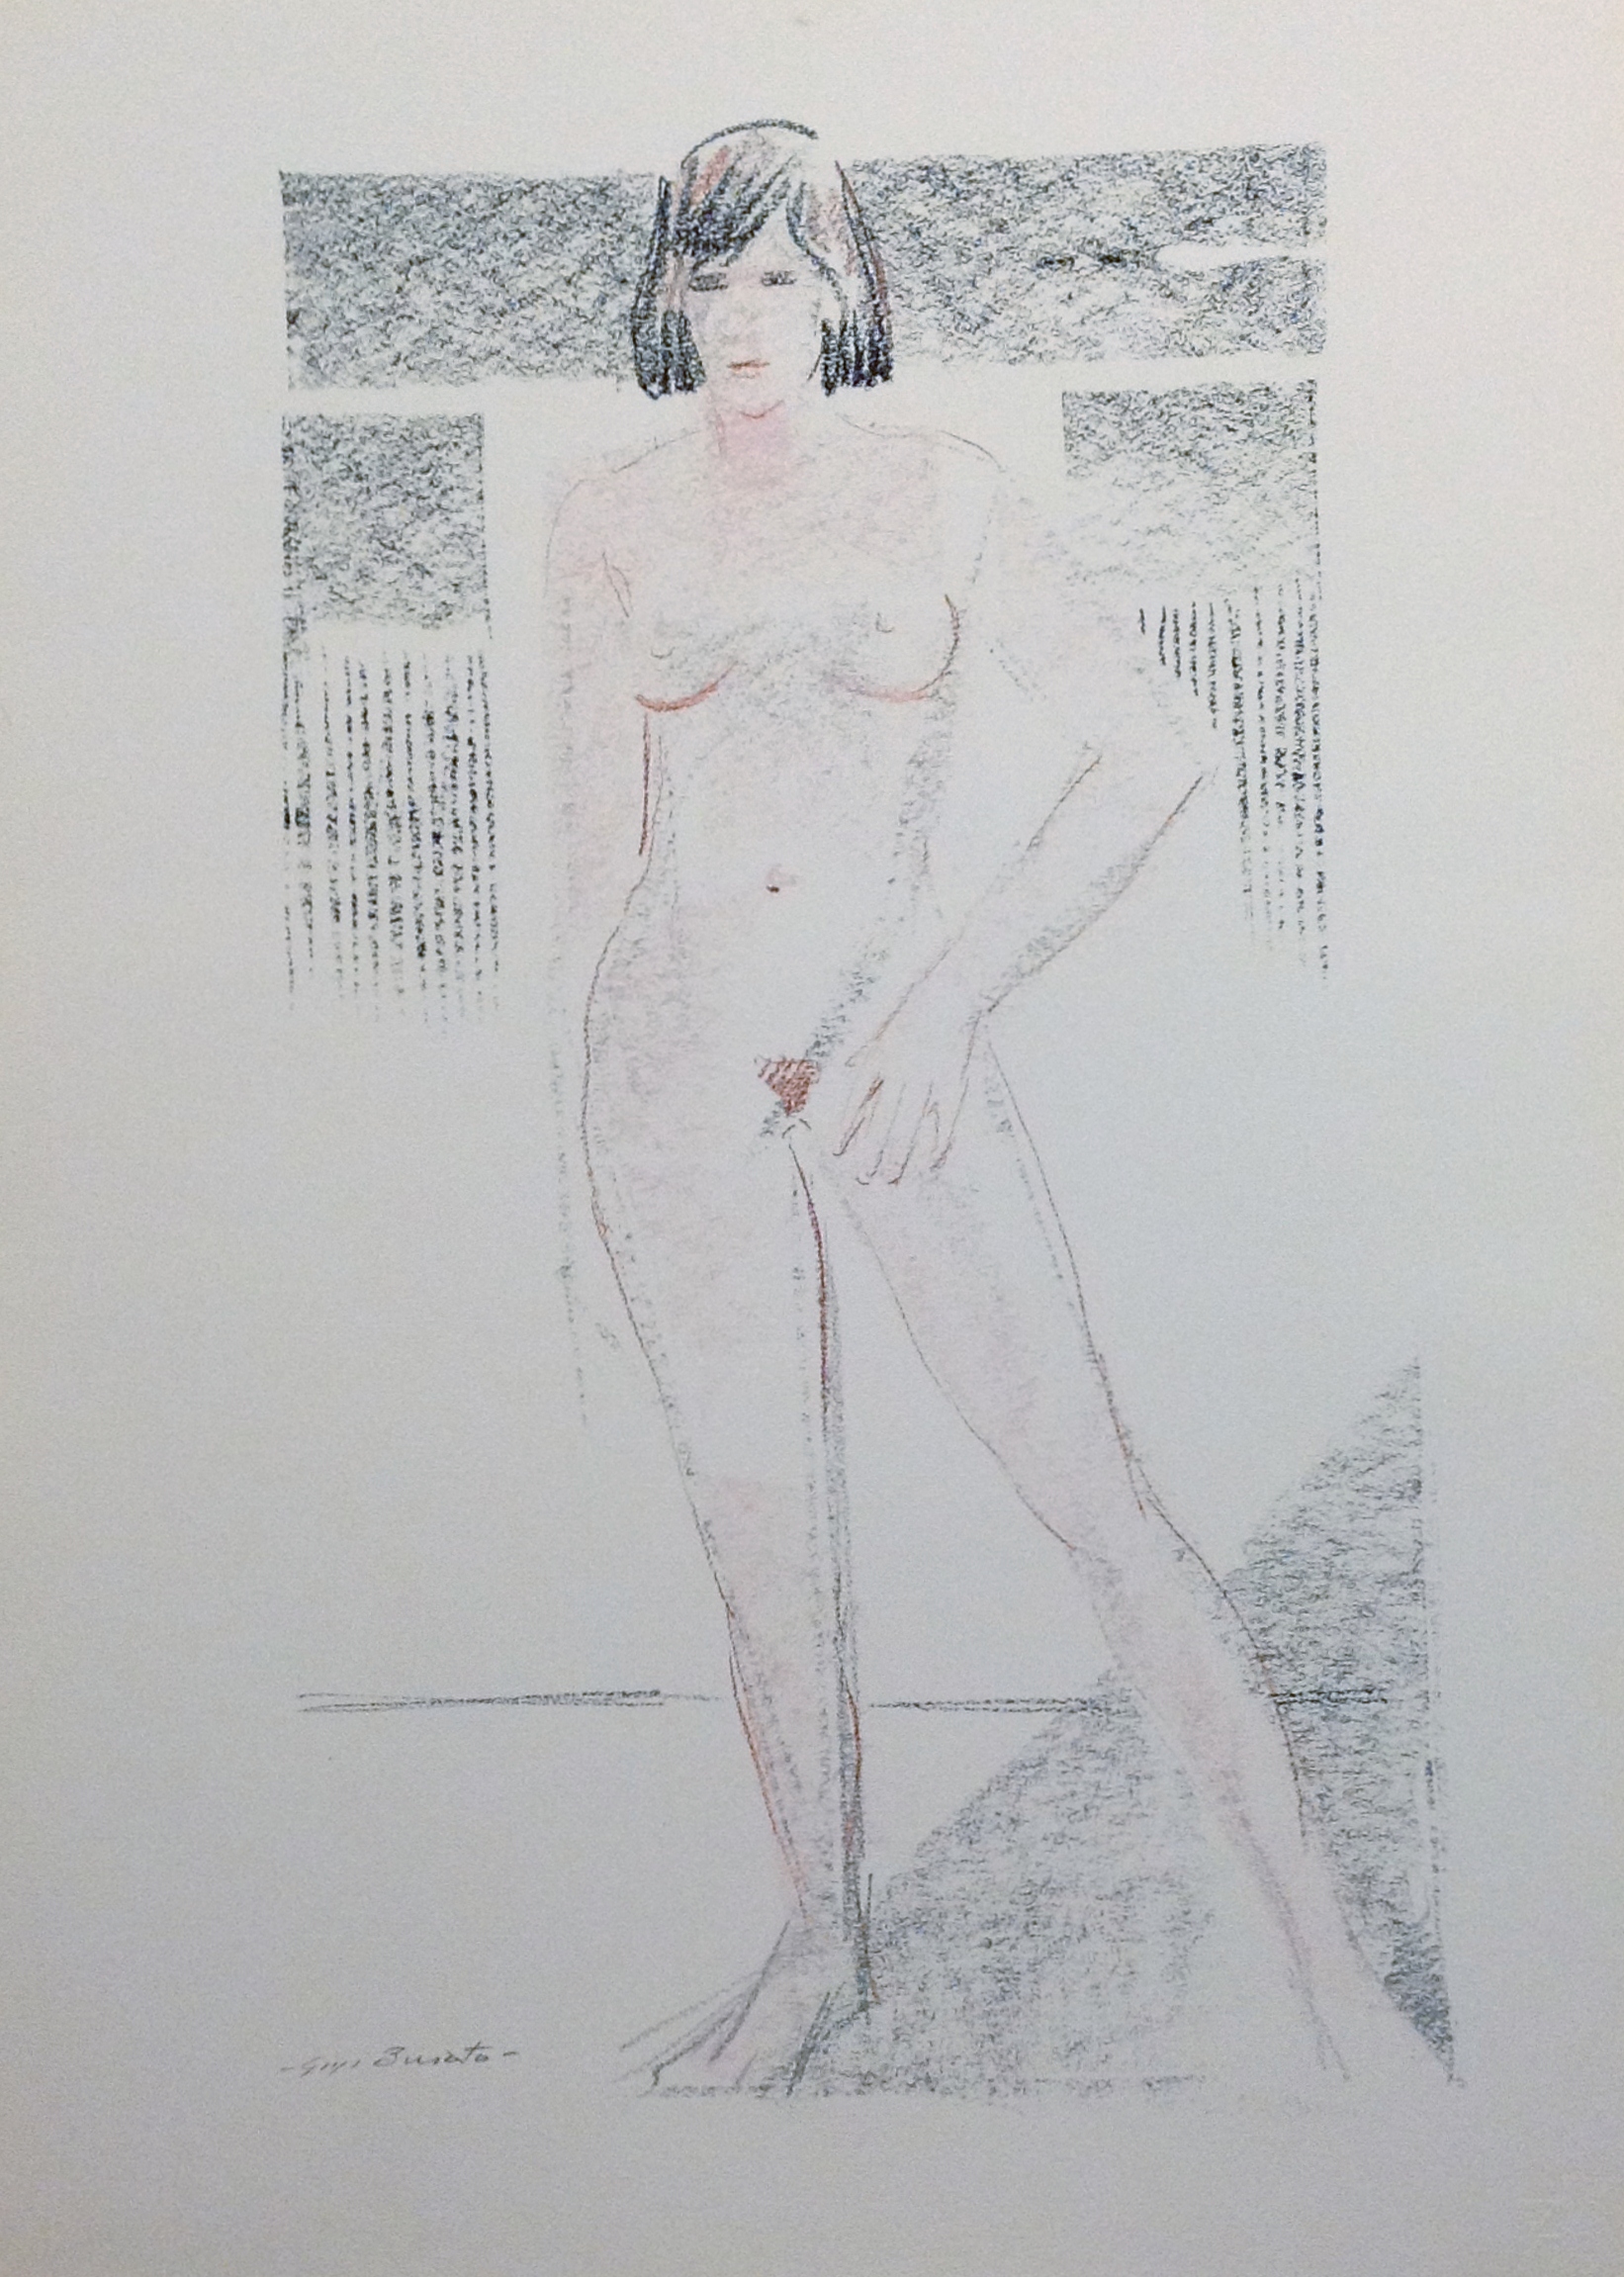 Nudo di donna disegno astratto di donna nuda, di Gigi Busato, disegno a pastello su carta a colori, collezione di famiglia